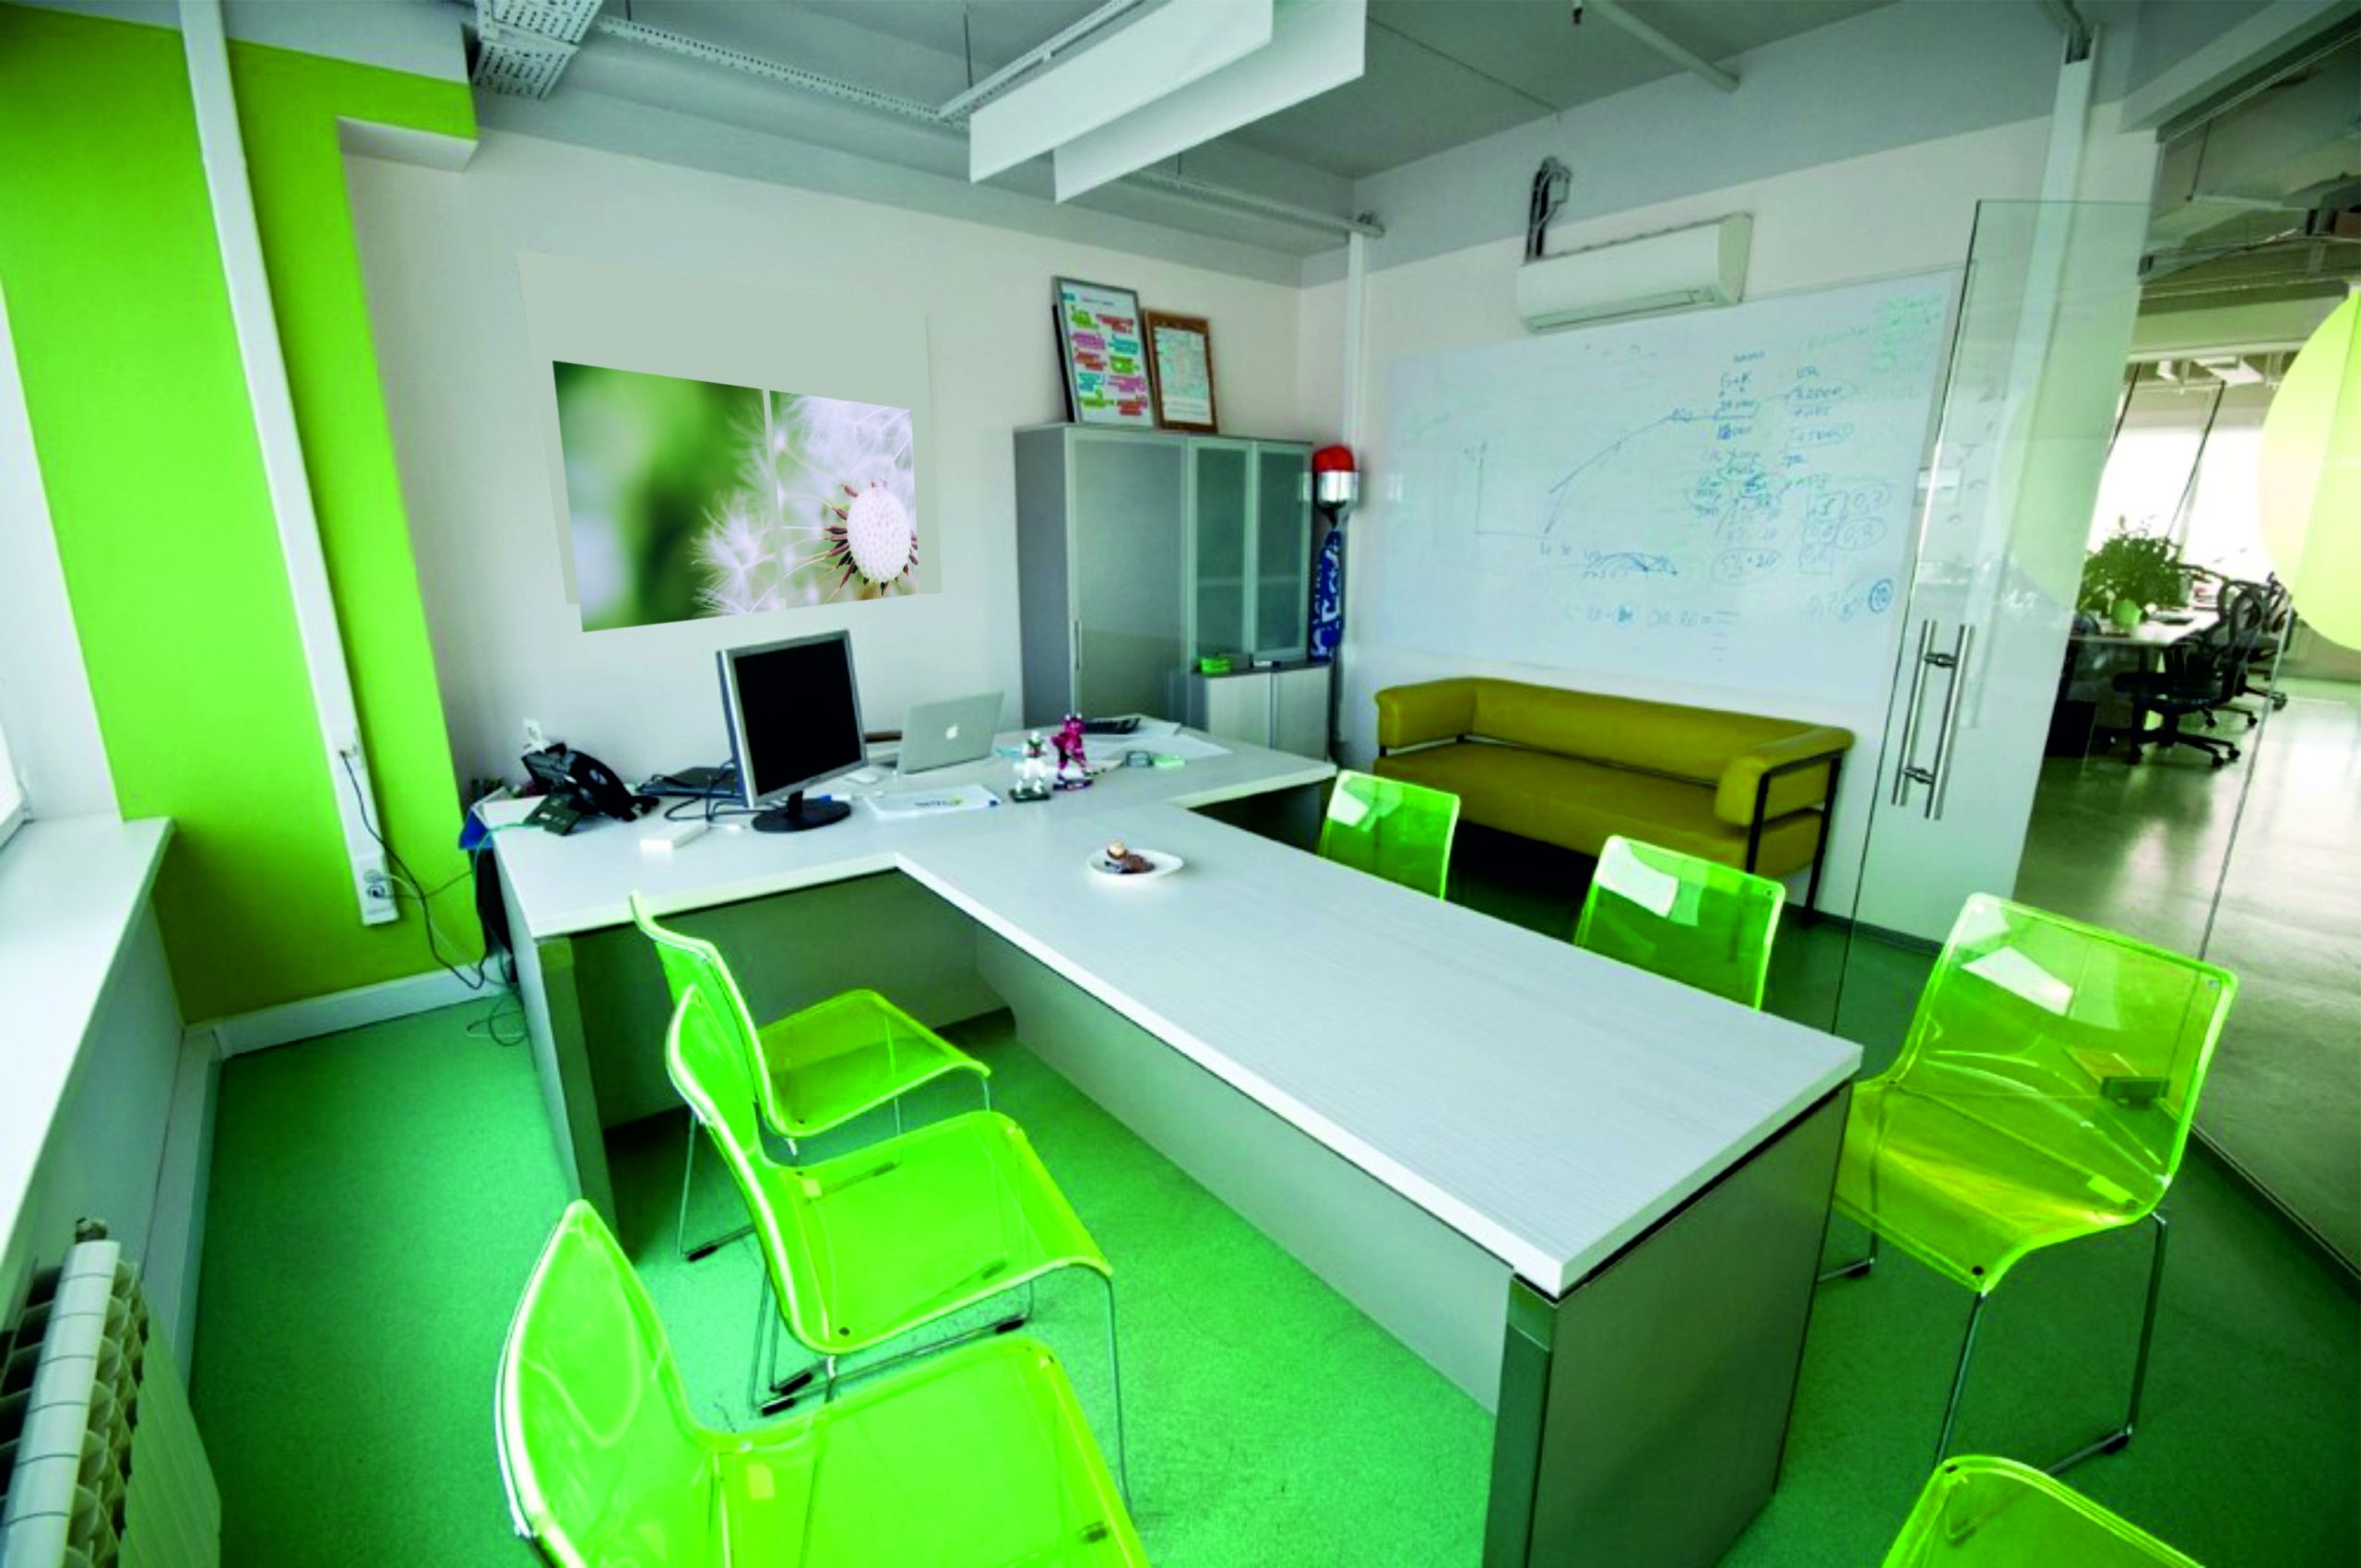 Оо 2 кабинет. Офис в зеленых тонах. Интерьер офиса. Зеленый цвет в интерьере офиса. Зеленая стена в офисе.